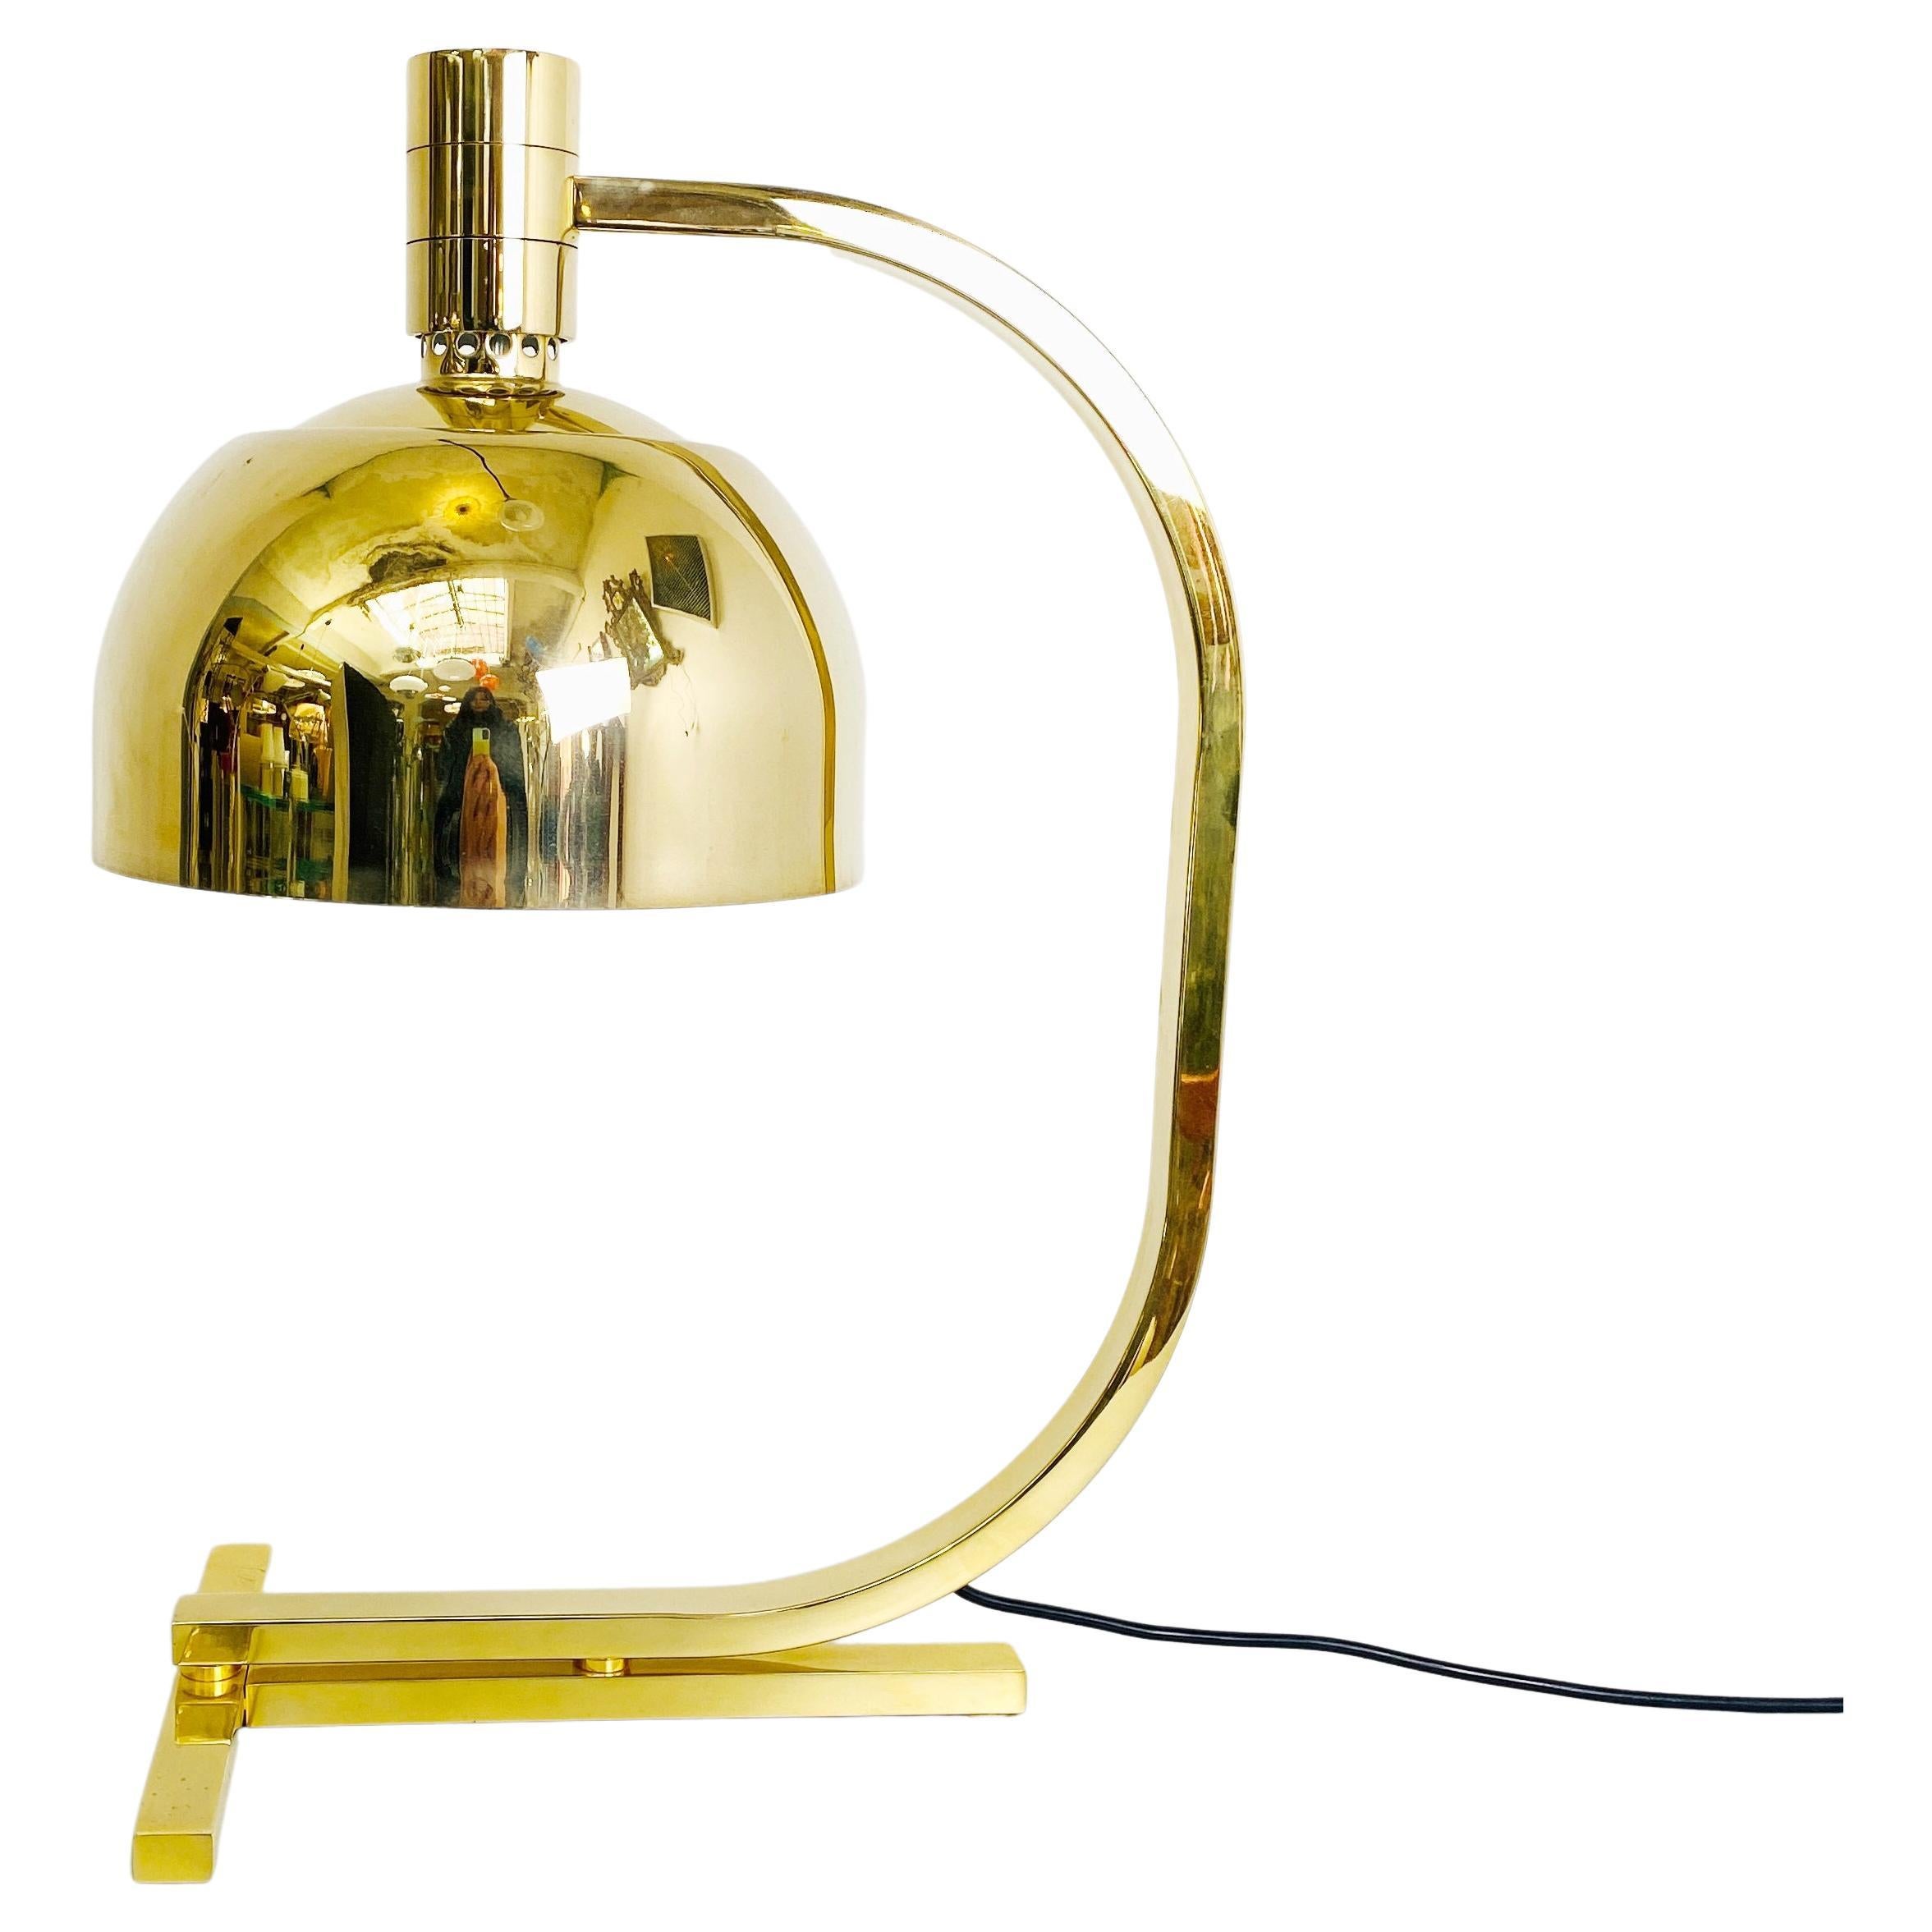 AM \ AS Gold-Chrom-Tischlampe von Franco Albini und Franca Helg für Sirrah, 1969